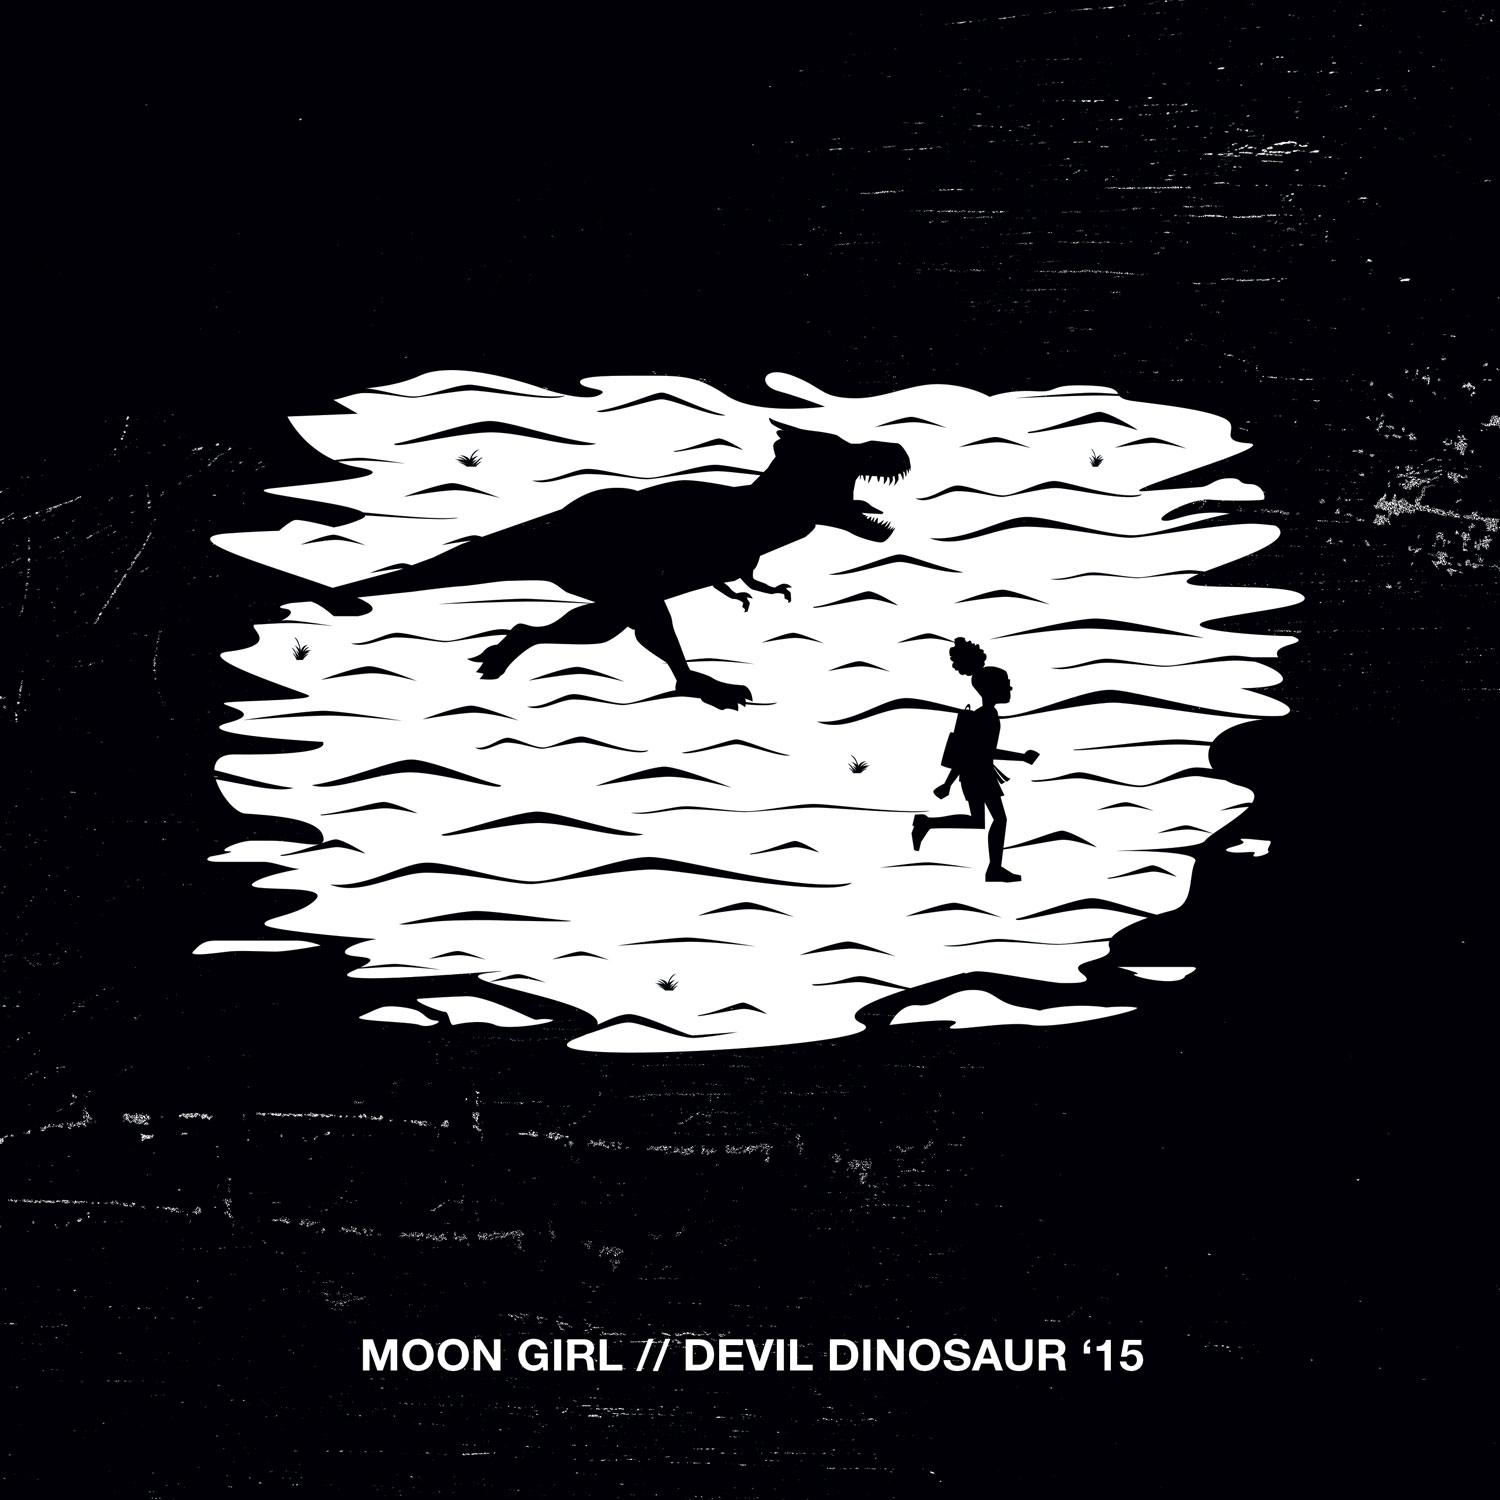 Moon_Girl_and_Devil_Dinosaur_1_Veregge_Hip-Hop_Variant